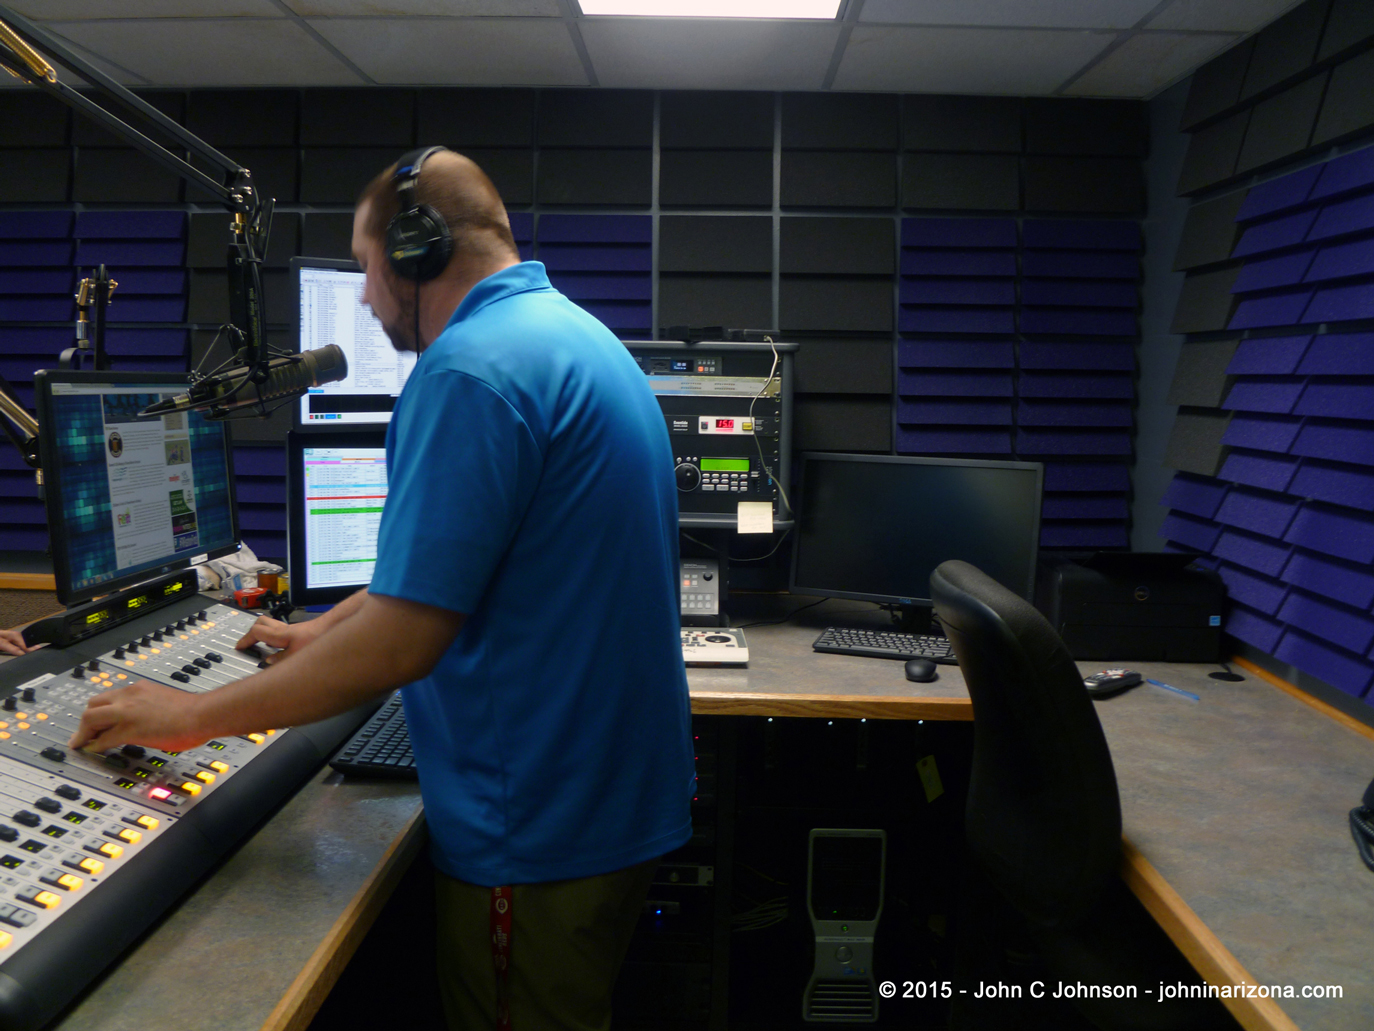 WAJI FM Radio Fort Wayne, Indiana